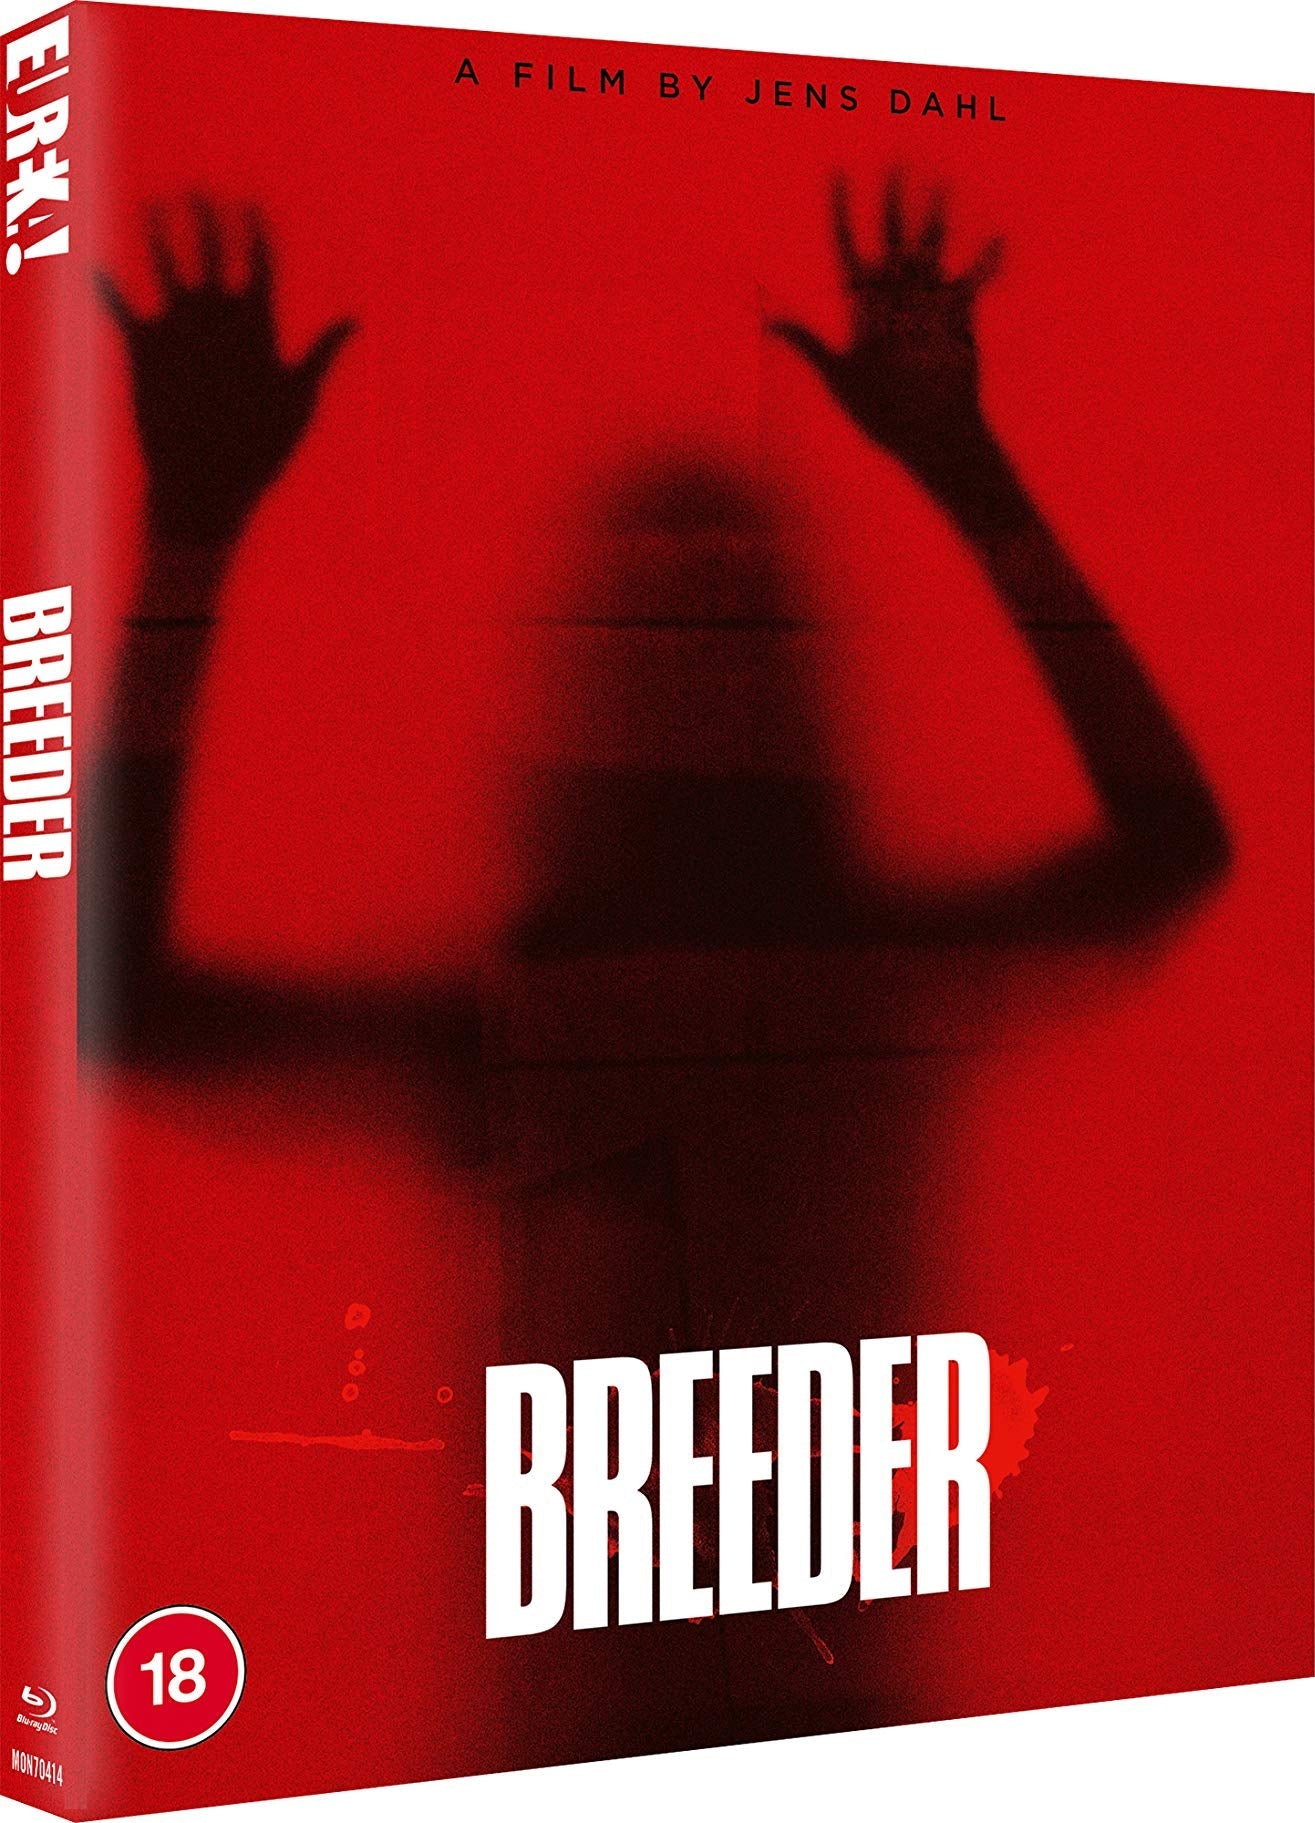 Breeder (Limited Edition - Region B Import) Blu-Ray Blu-Ray